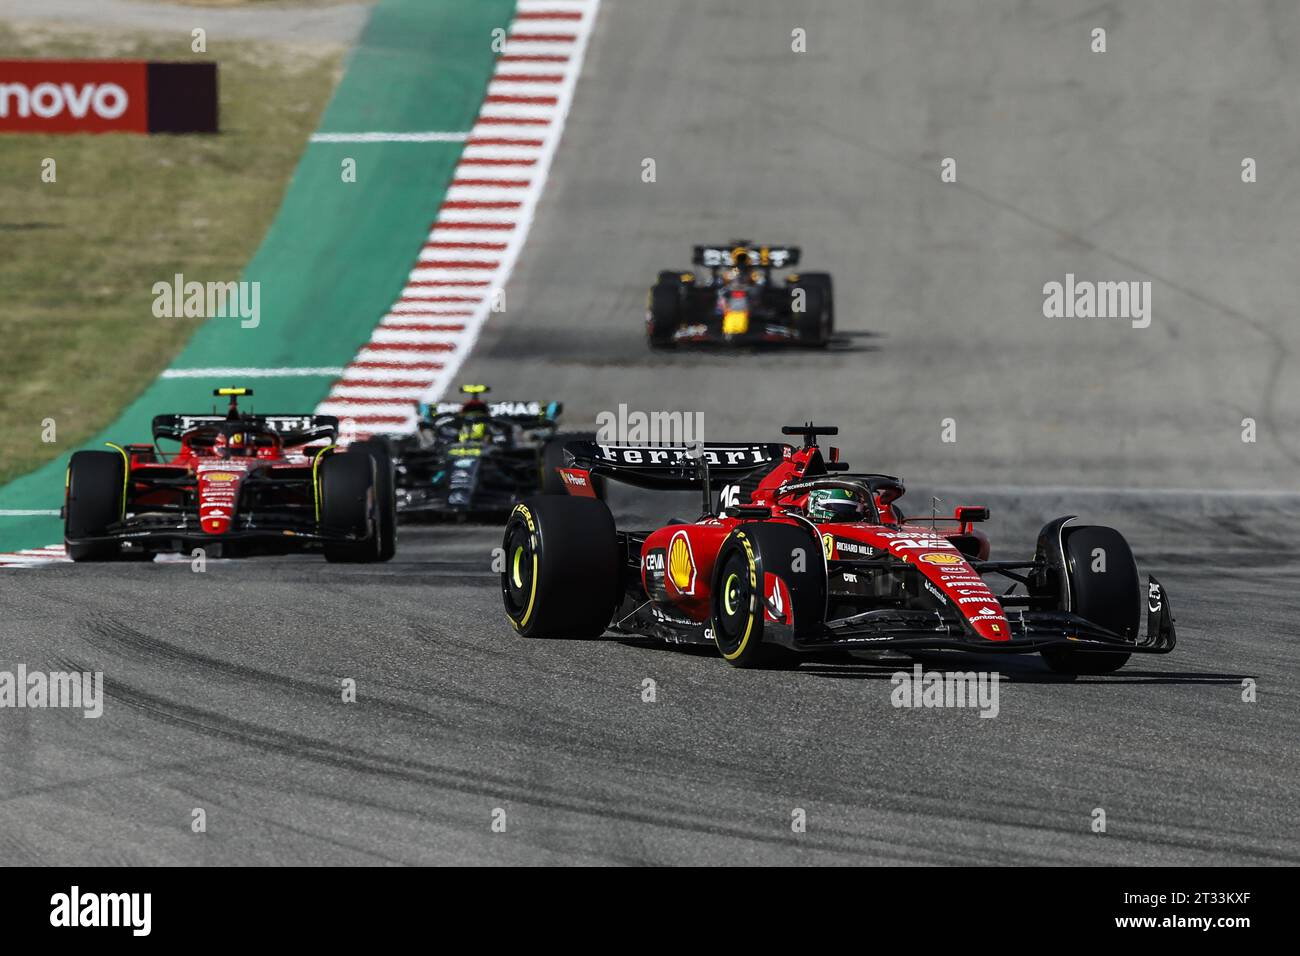 Affiche dart Leclerc Ferrari F1 SF-23 2023, affiche Formule 1